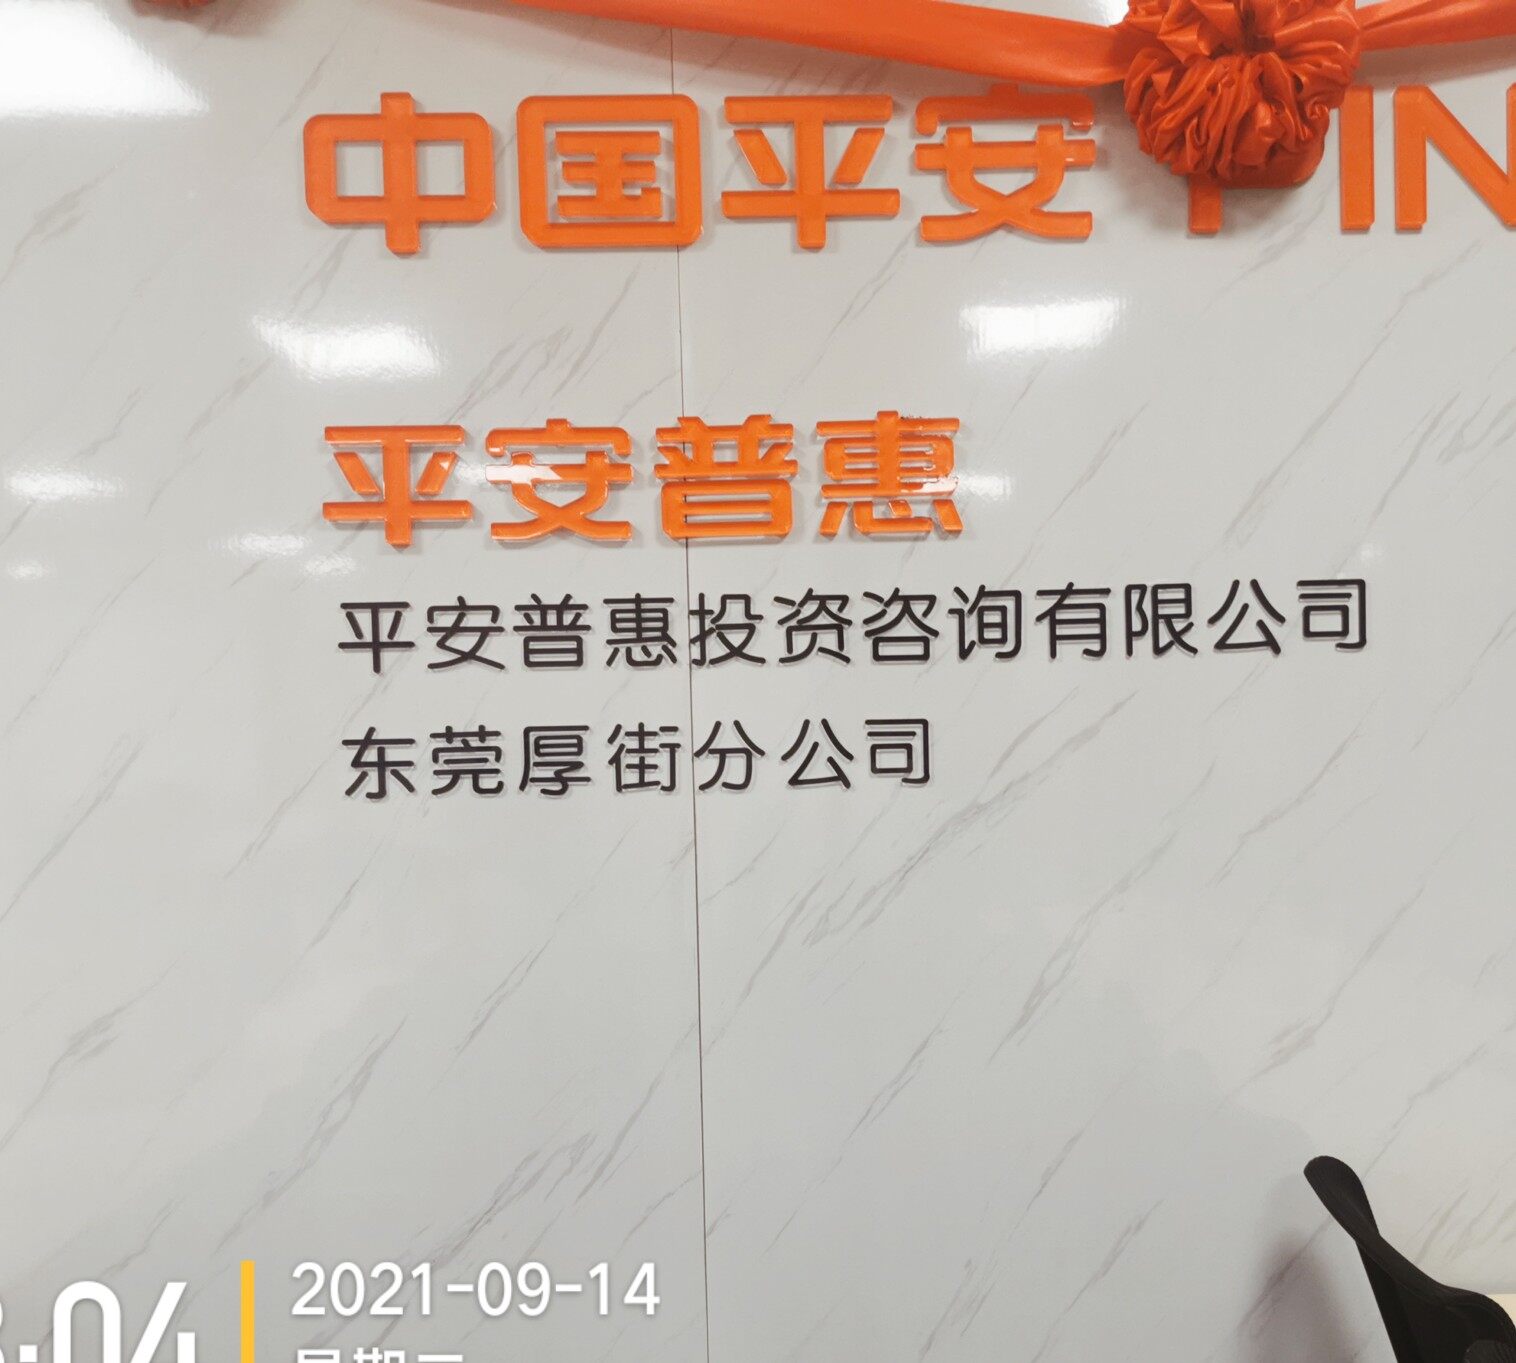 平安普惠东莞厚街分招聘logo